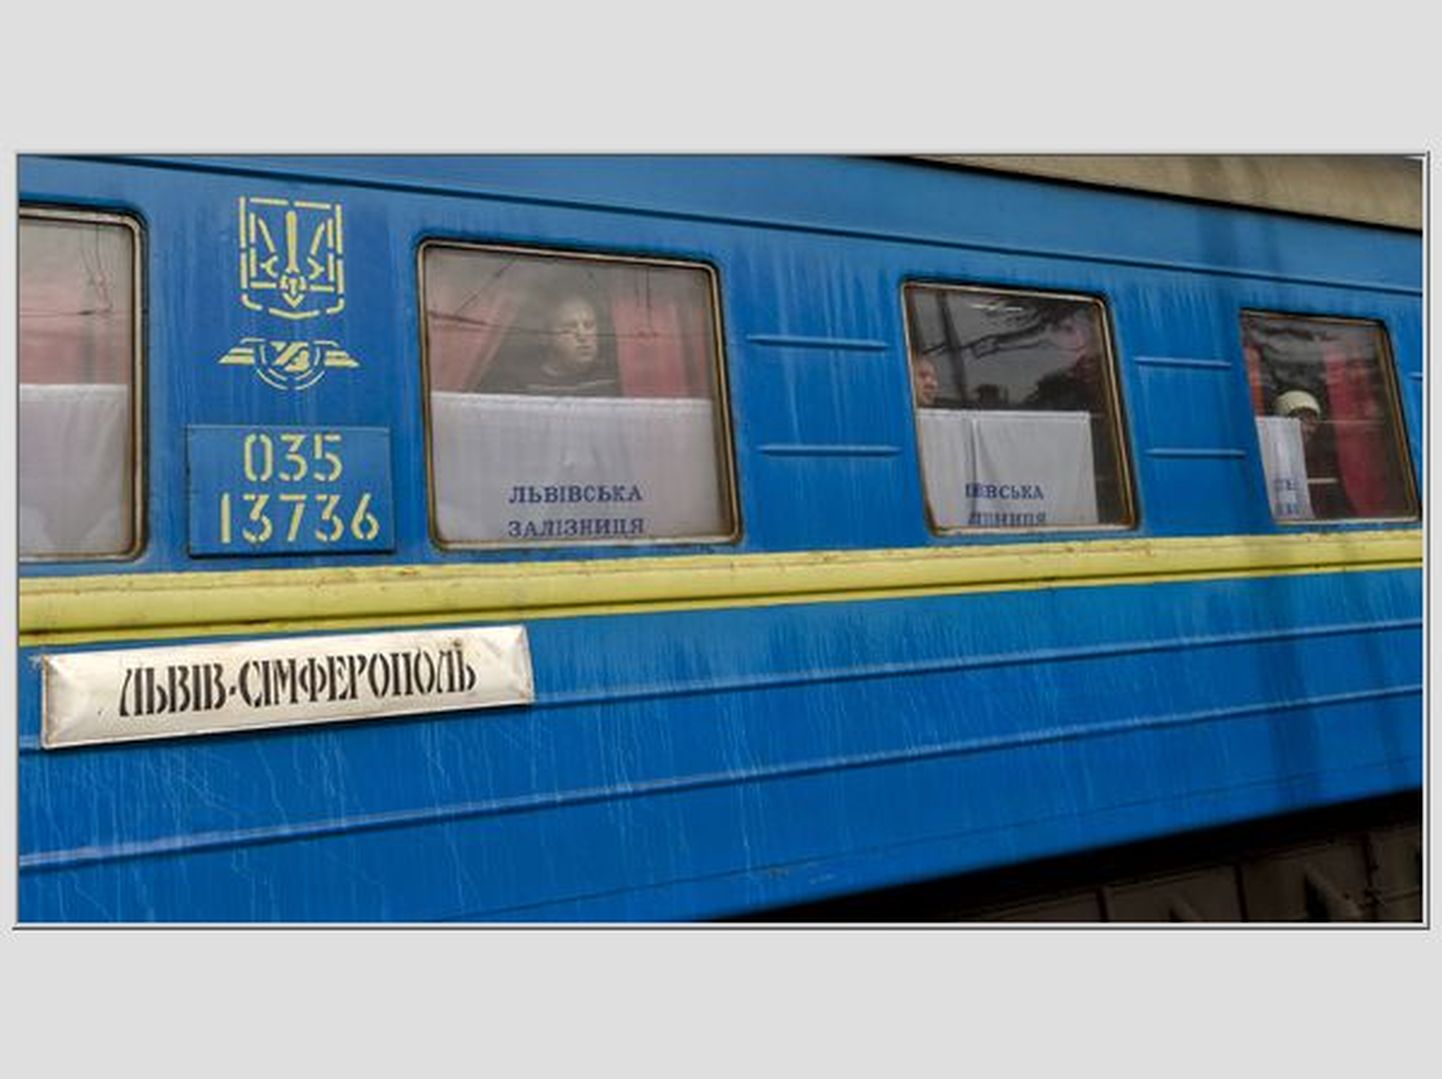 Lvivi-Simferopoli rong.